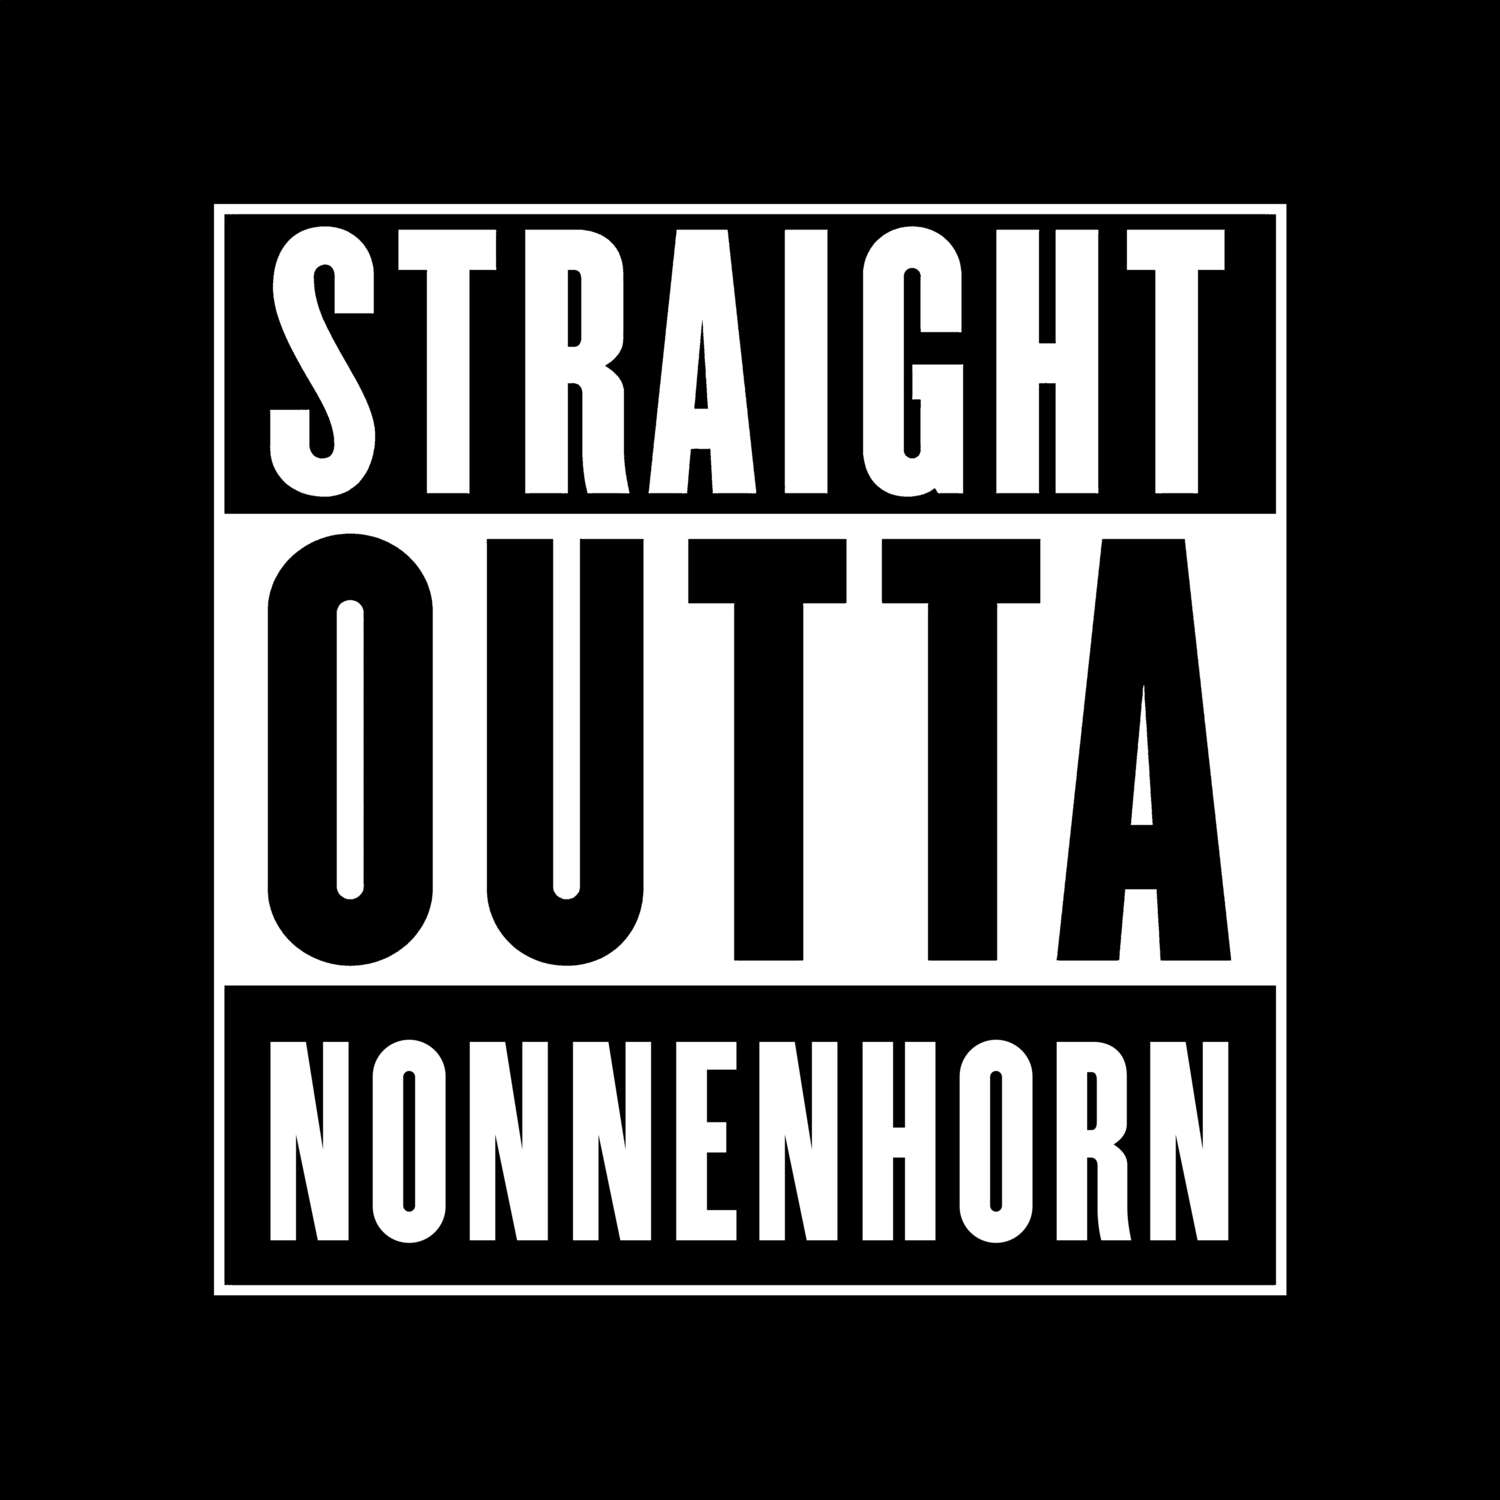 Nonnenhorn T-Shirt »Straight Outta«